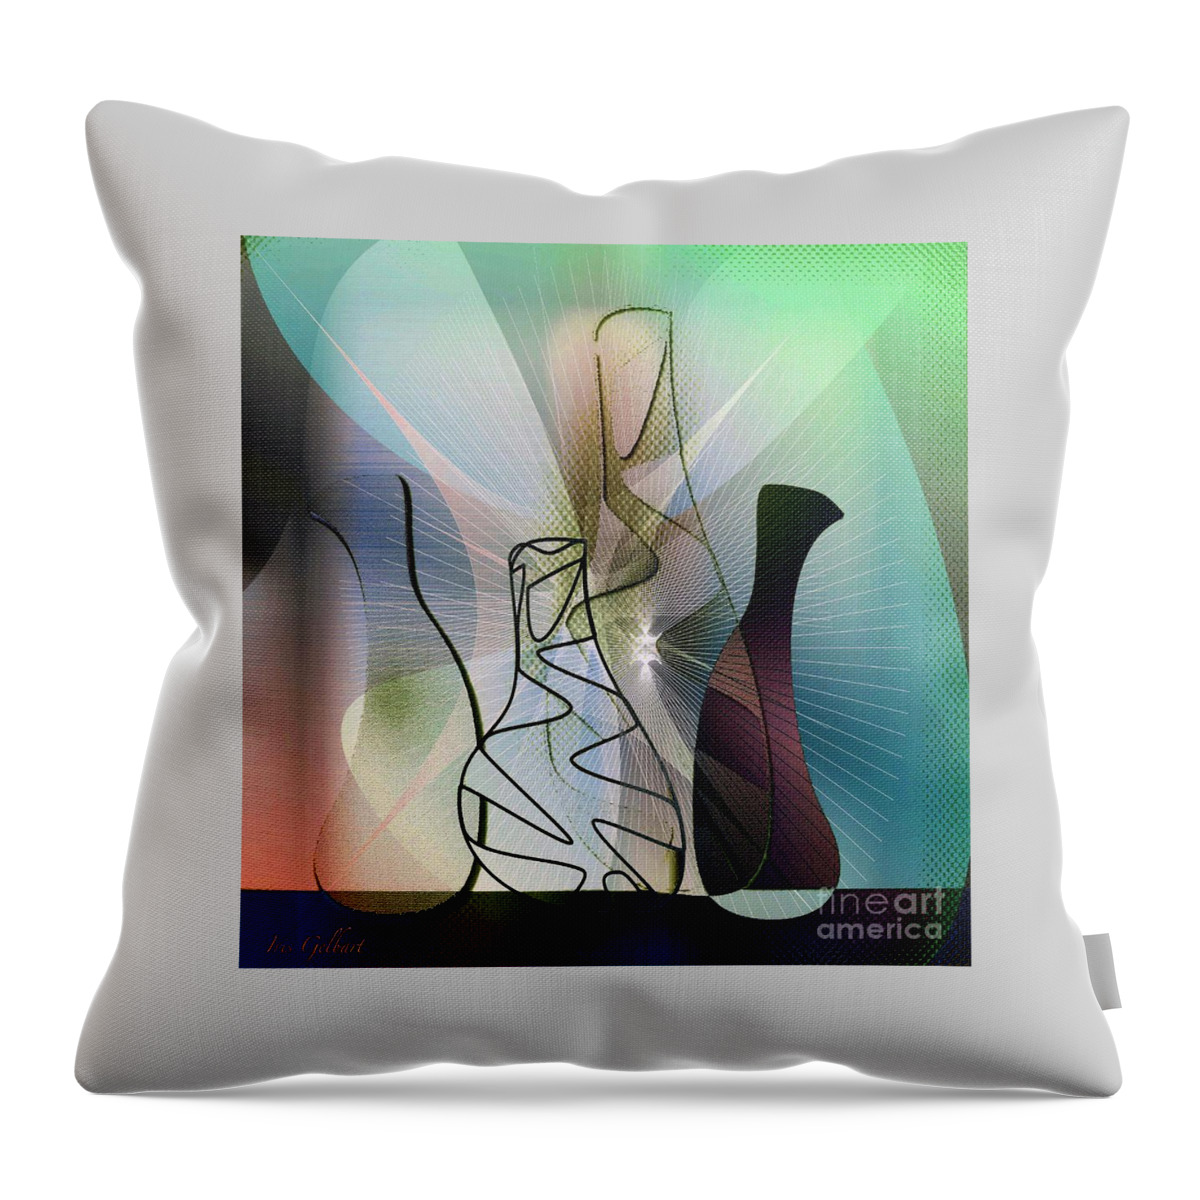 Jugs Throw Pillow featuring the digital art Four jugs by Iris Gelbart